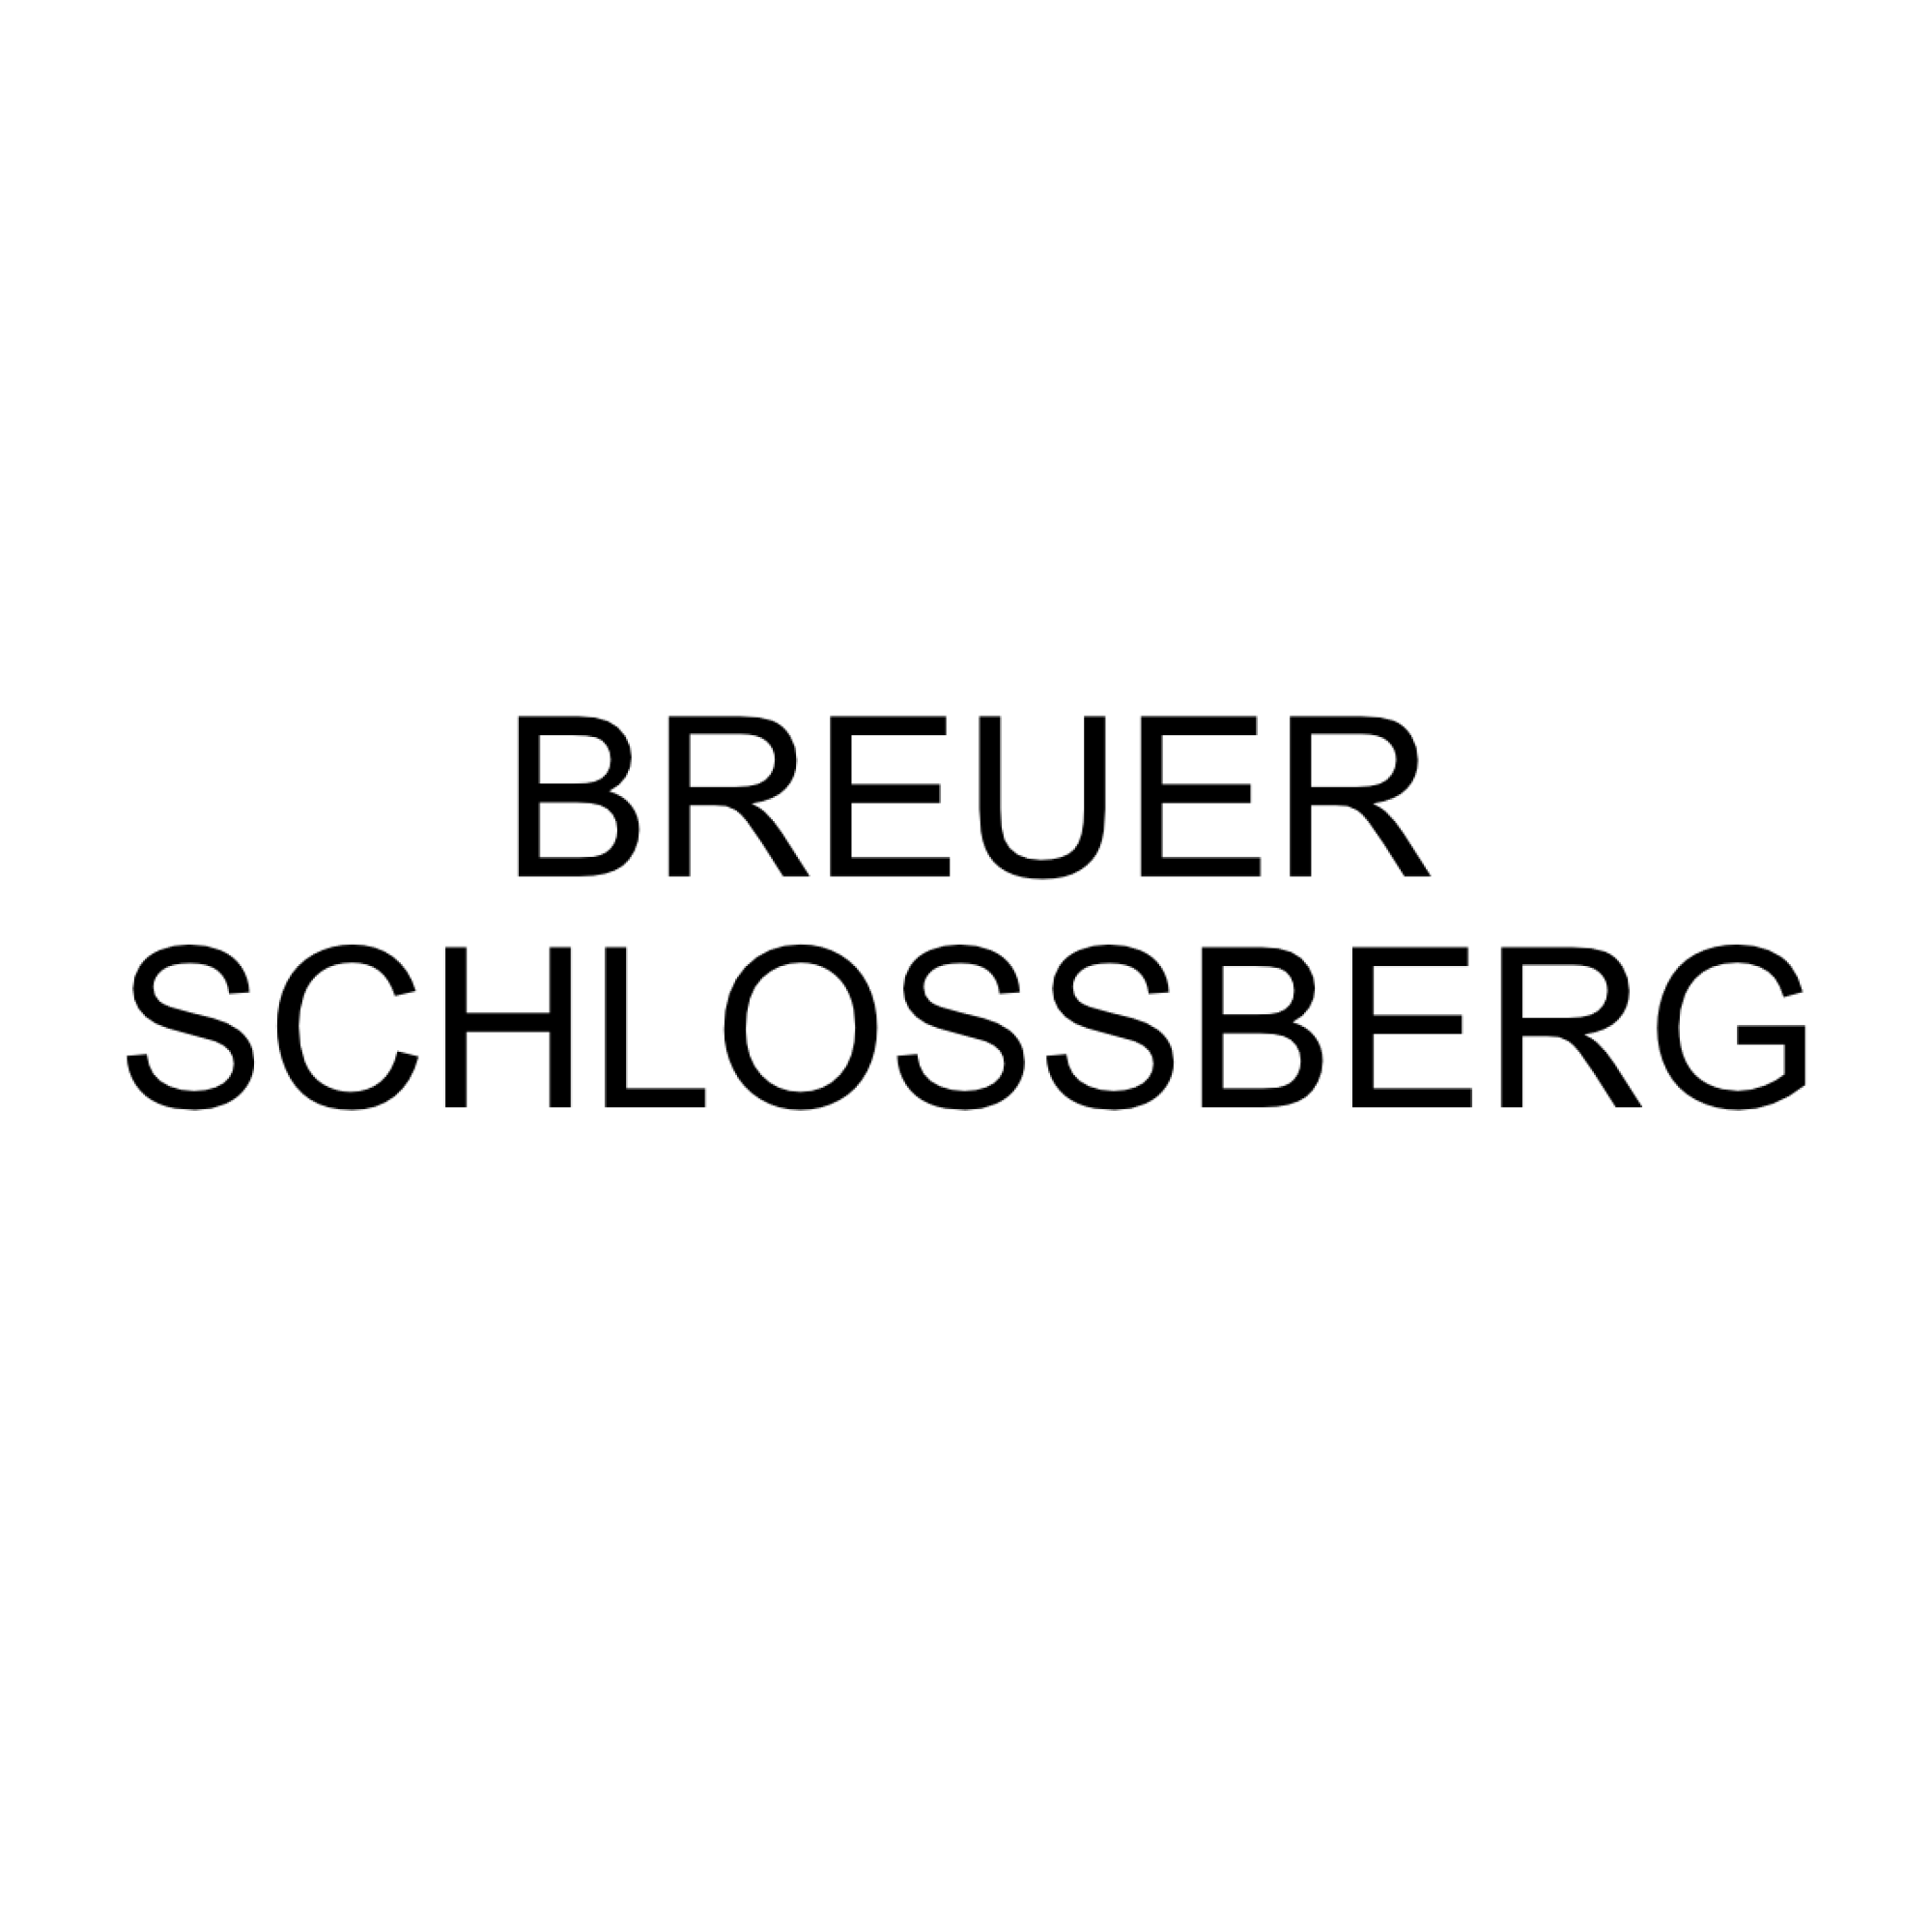 2017 Breuer Schlossbgerg, 2018 Breuer Schlossberg, 2019 Breuer Schlossberg, 2020 Breuer Schlossberg